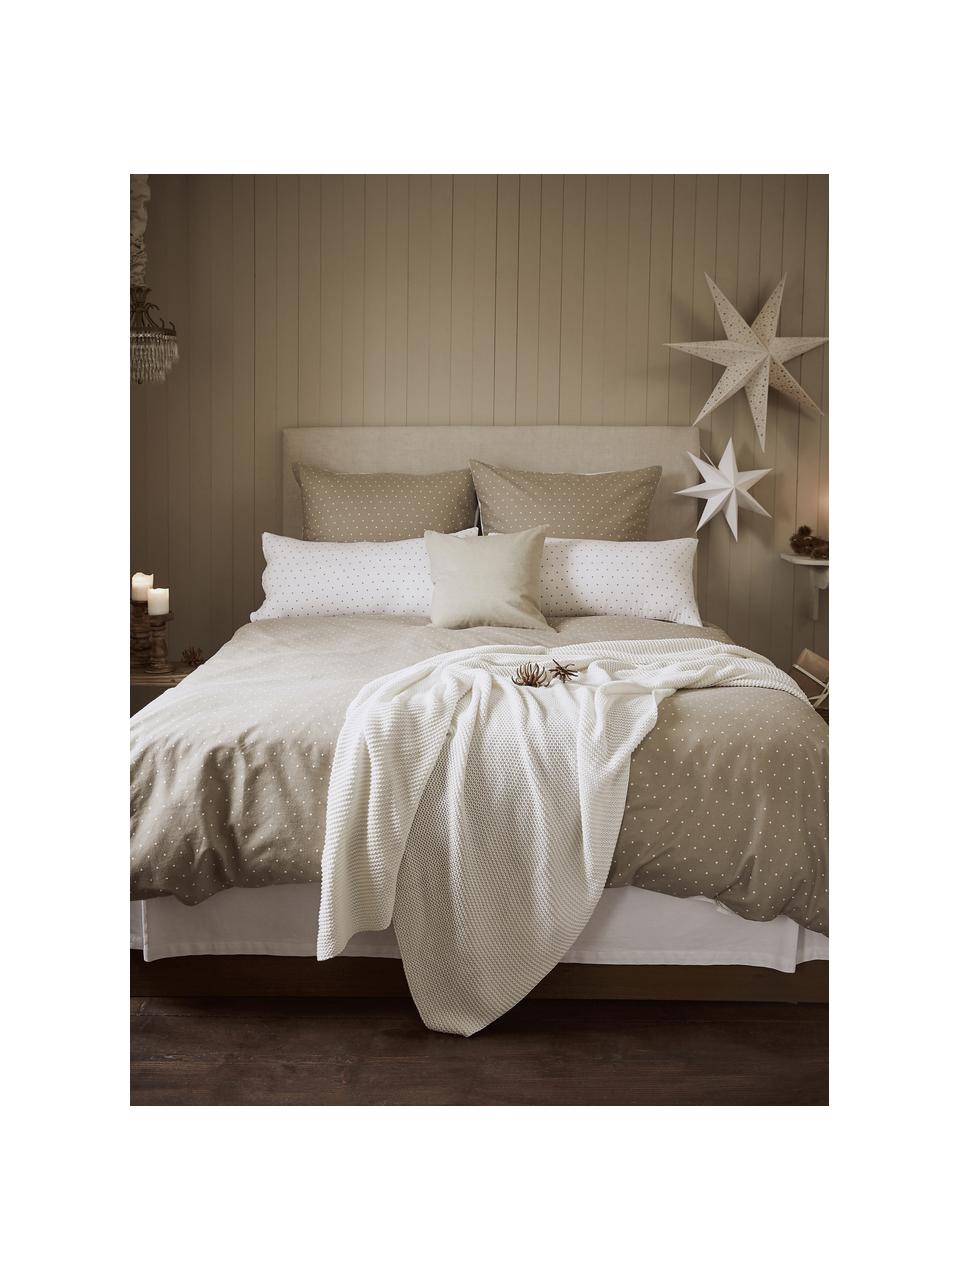 Flanelová obojstranná posteľná bielizeň Betty, Béžová a biela, bodkovaná, 155 x 220 cm + 1 vankúš 80 x 80 cm